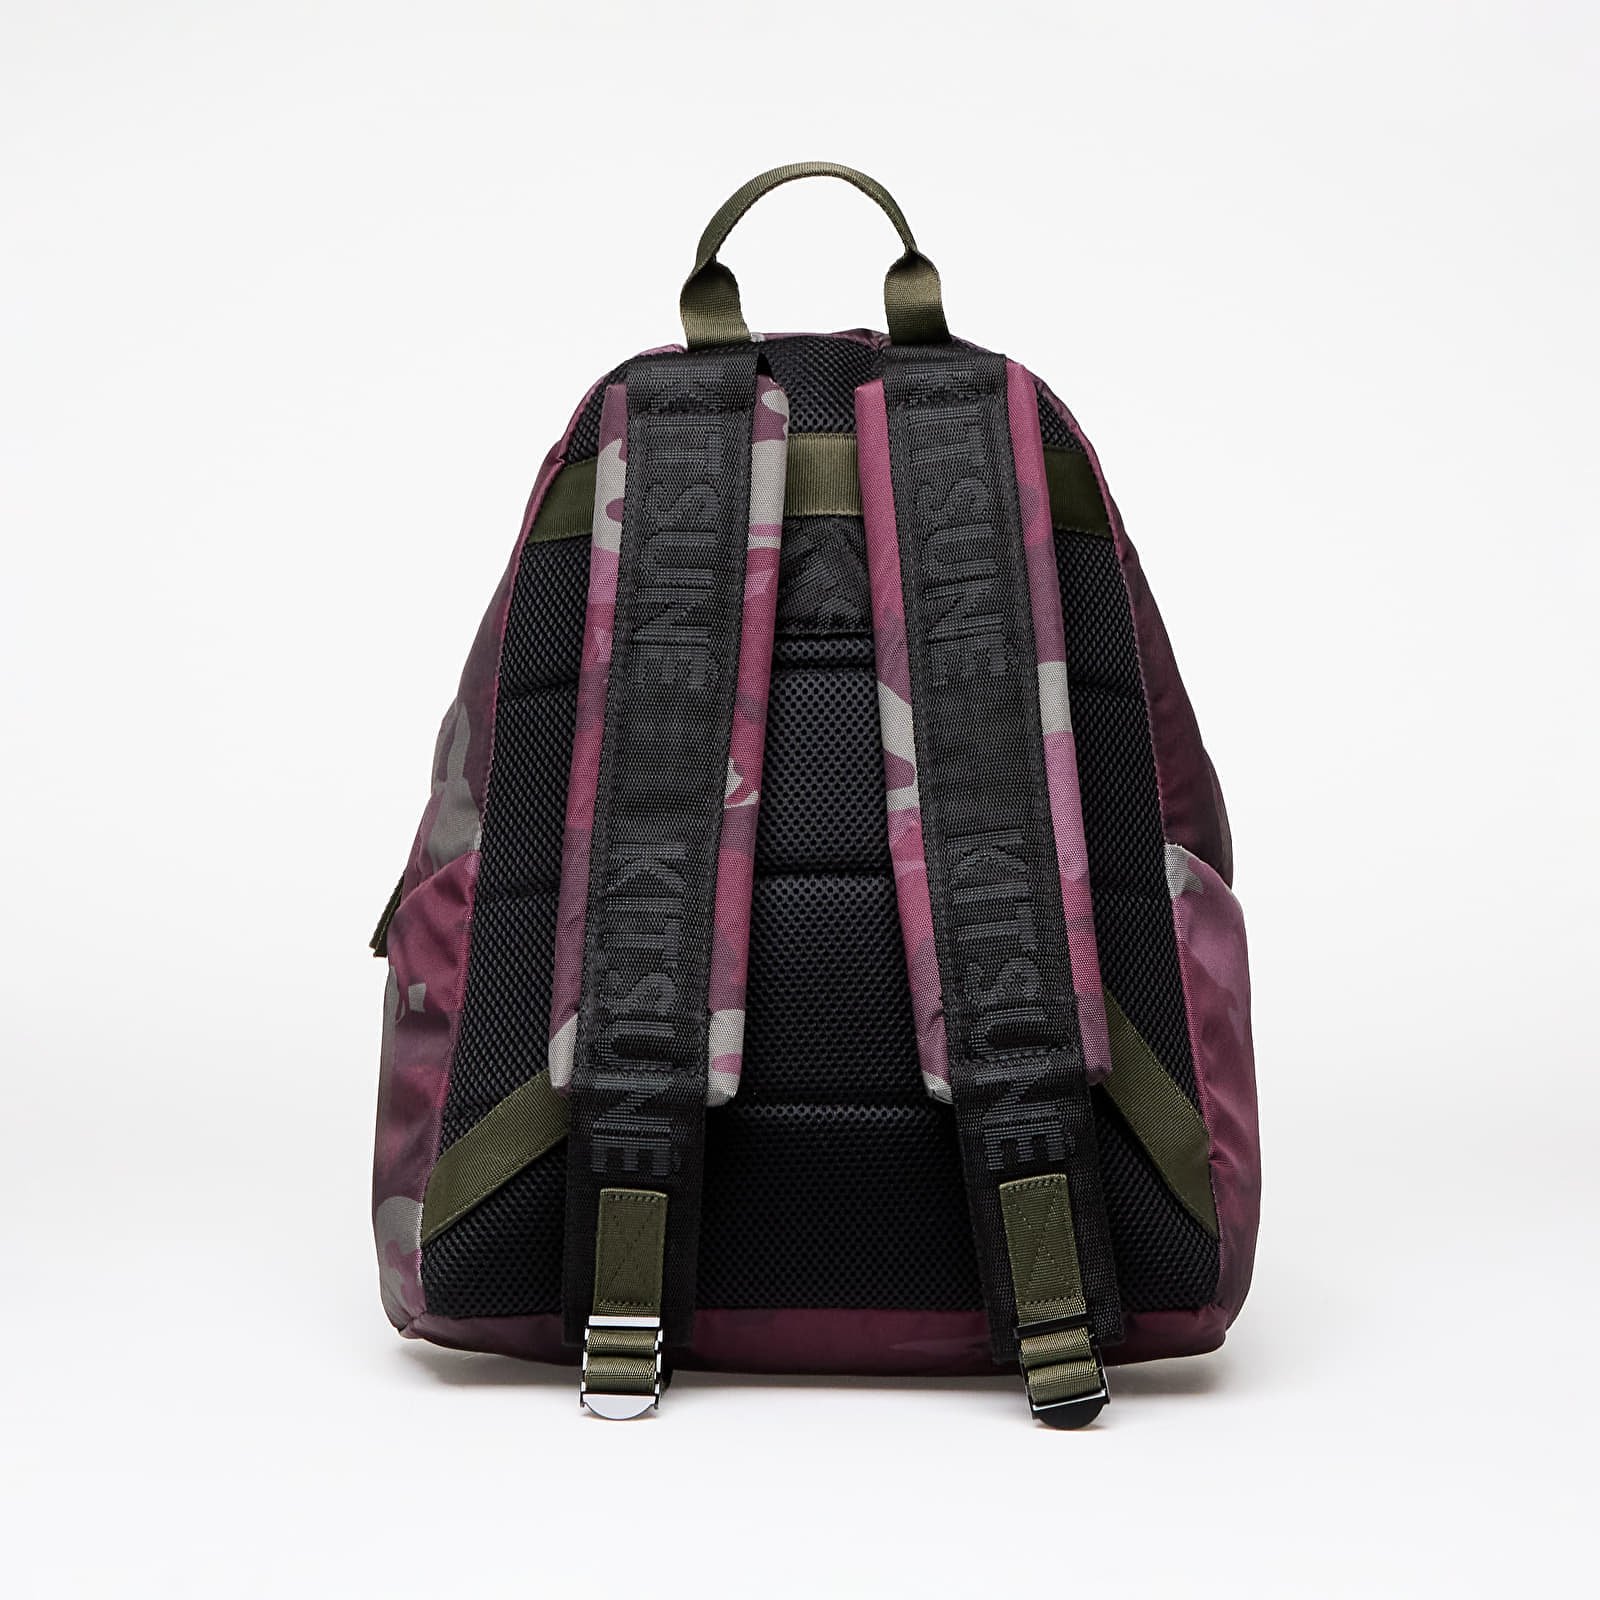 Maison Kitsuné x PADDED Backpack 24 l